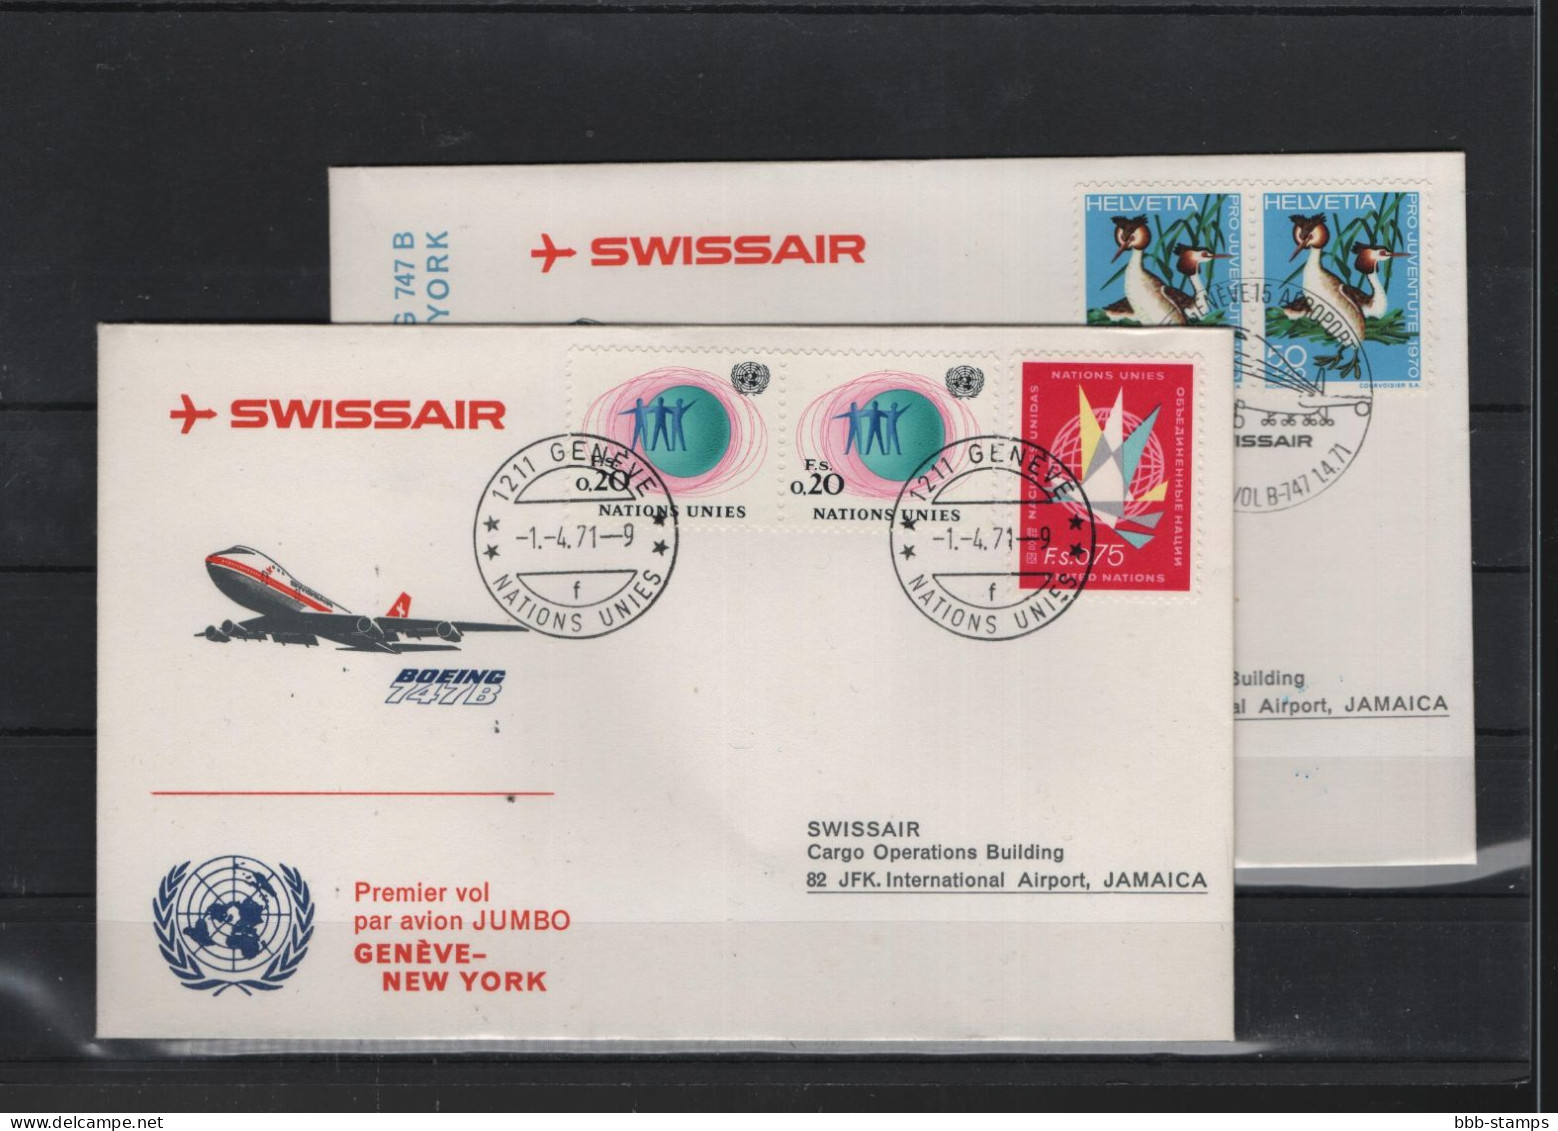 Schweiz Luftpost FFC Swissair 1.4.1971 Genf - New York VV - Premiers Vols